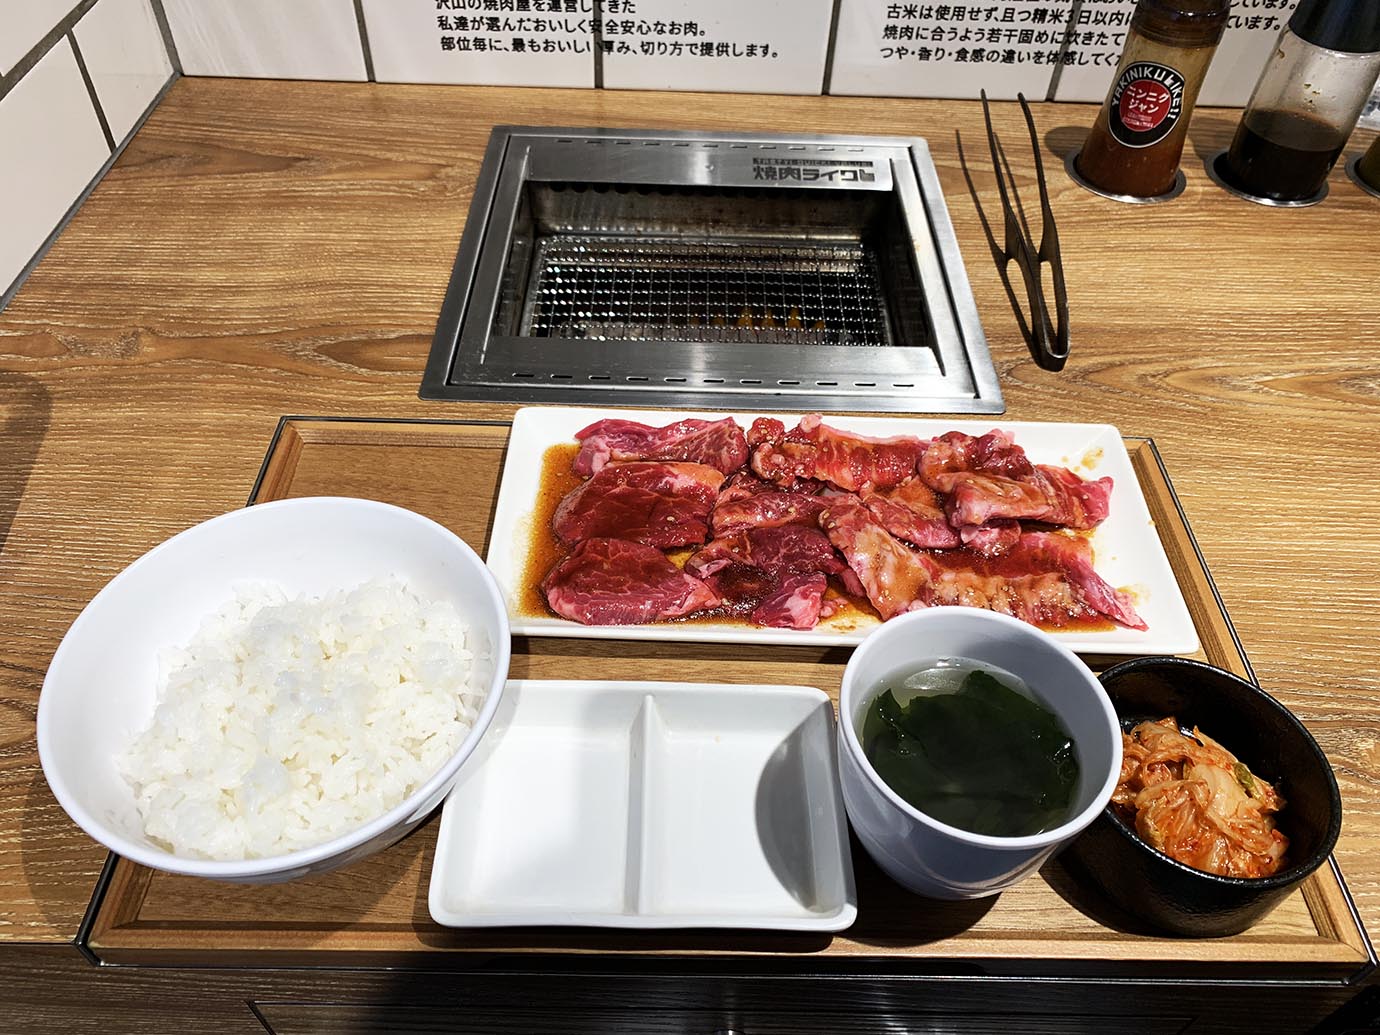 【話題】一人焼肉専門店・焼肉ライクが1200円の焼肉を290円で提供 / 五反田西口店オープン